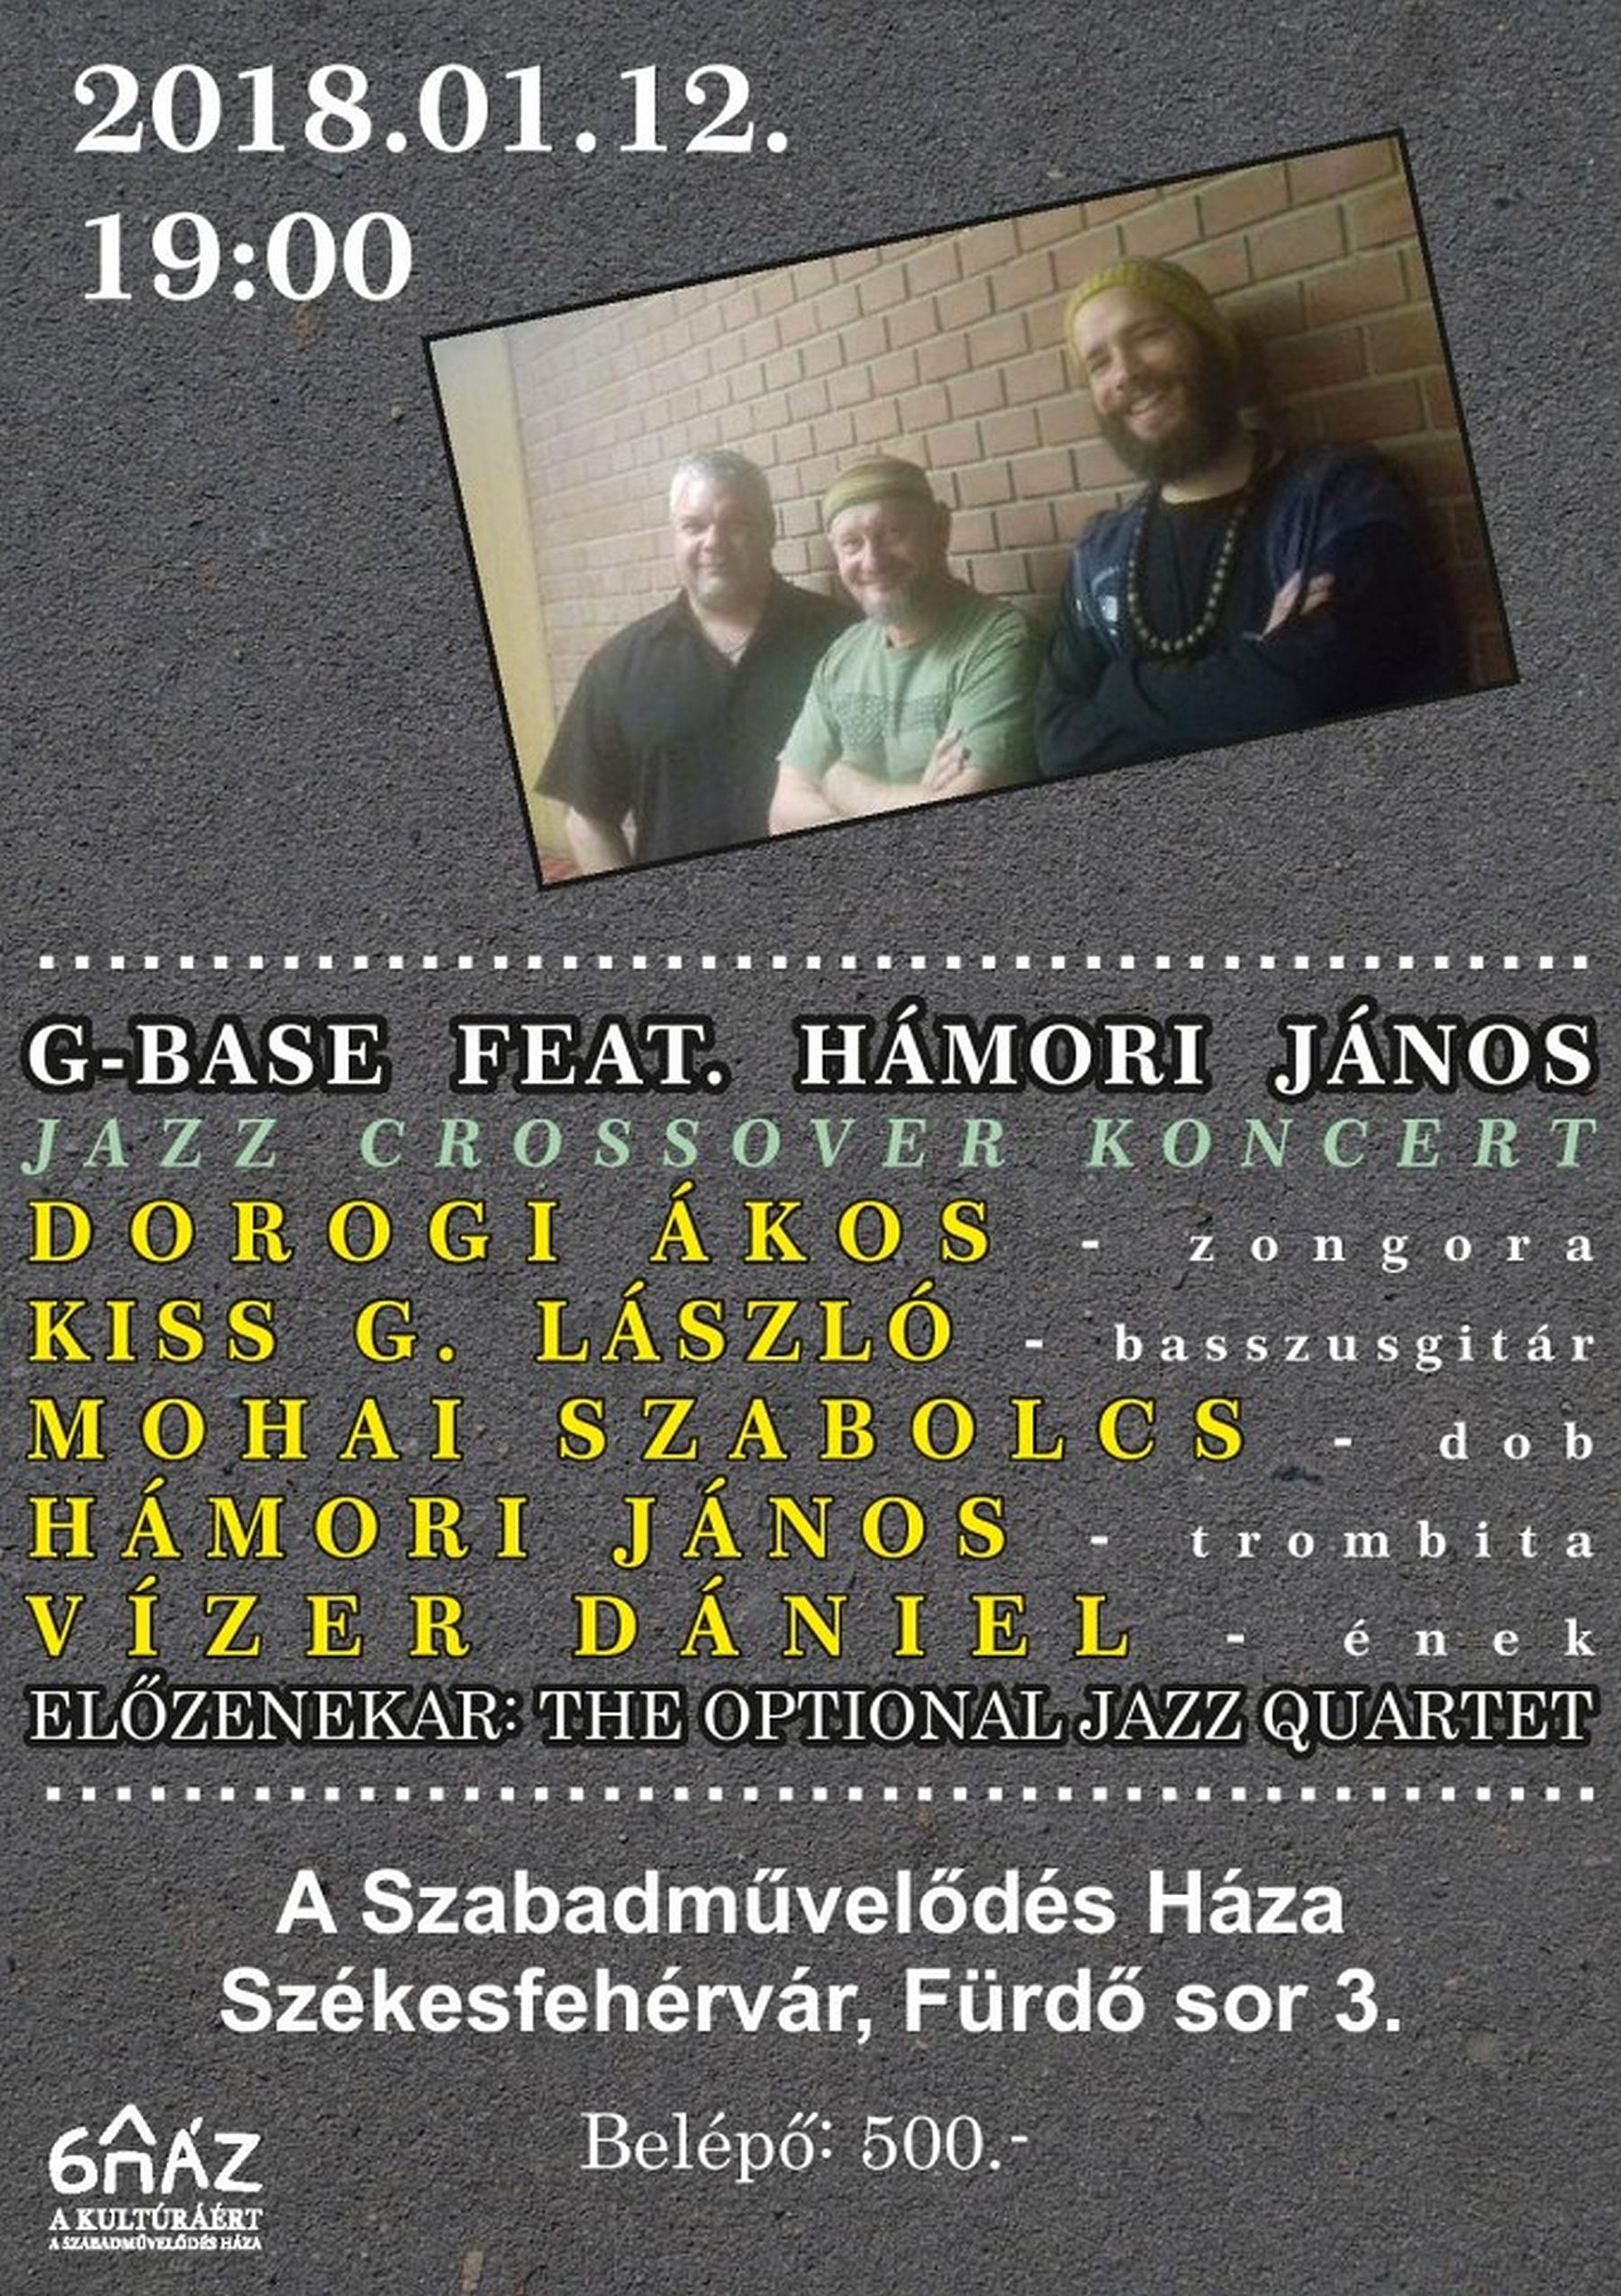 G-BASE és Hámori János - jazzkoncert lesz pénteken este A Szabadművelődés Házában